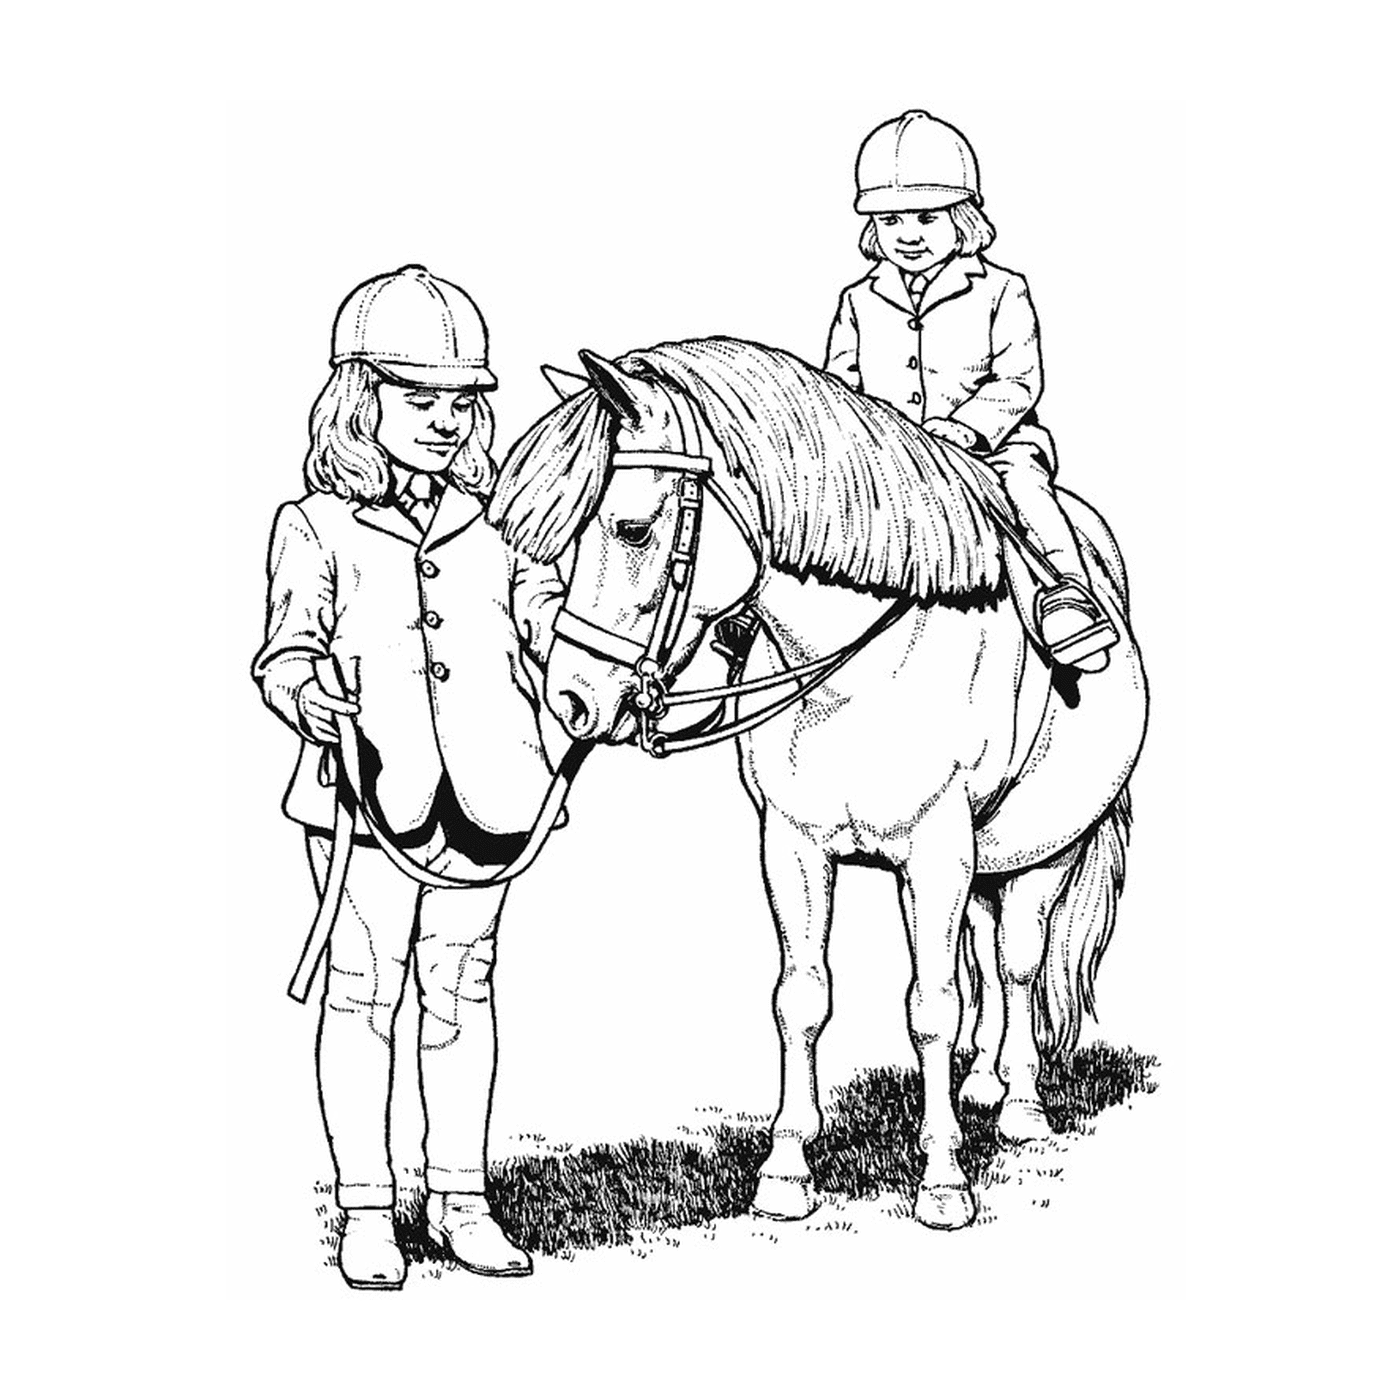  Гоночные лошади - двое детей ездят на лошади, держа в руках бразды правления 